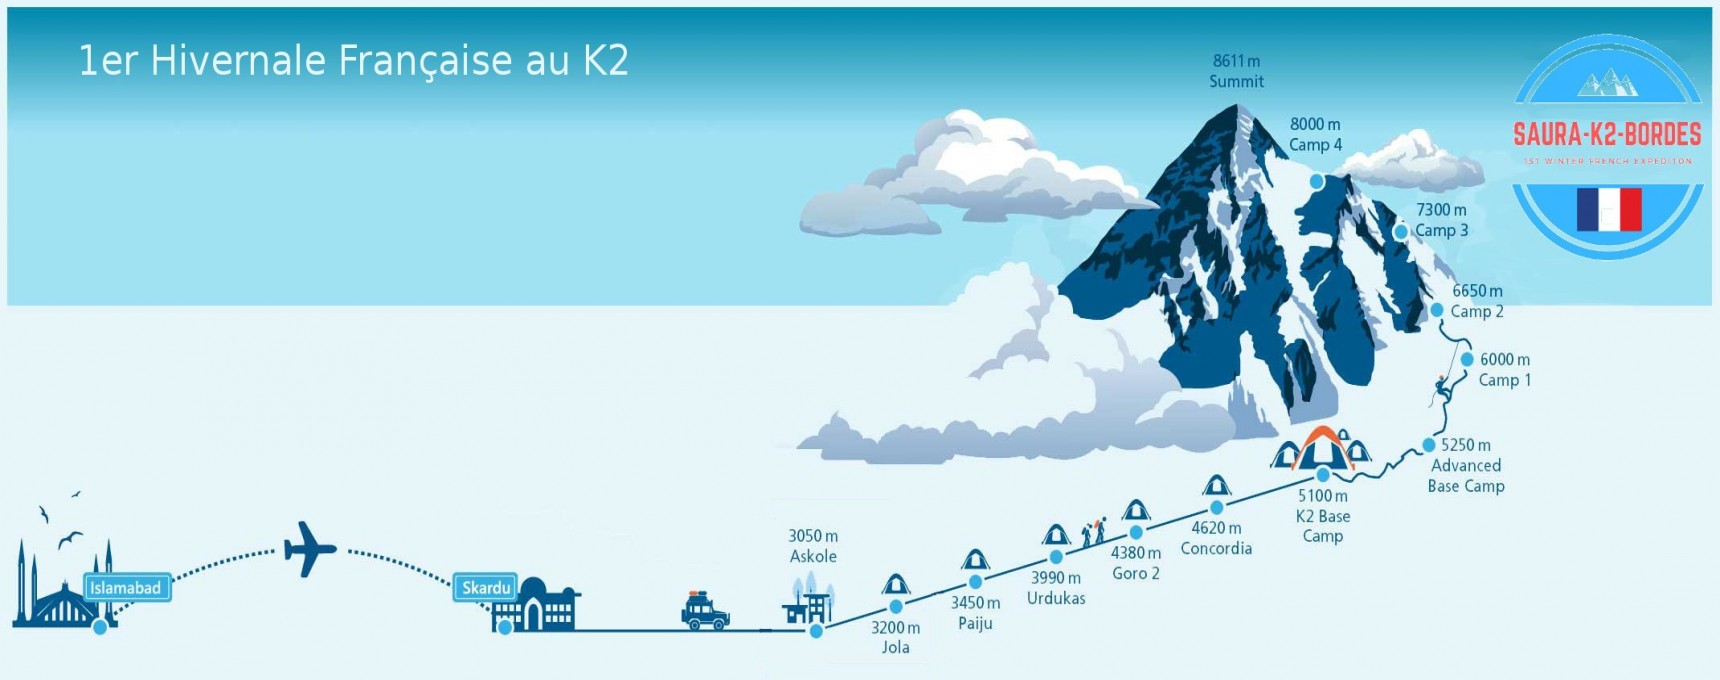 План первого этапа французской зимней экспедиции на К2